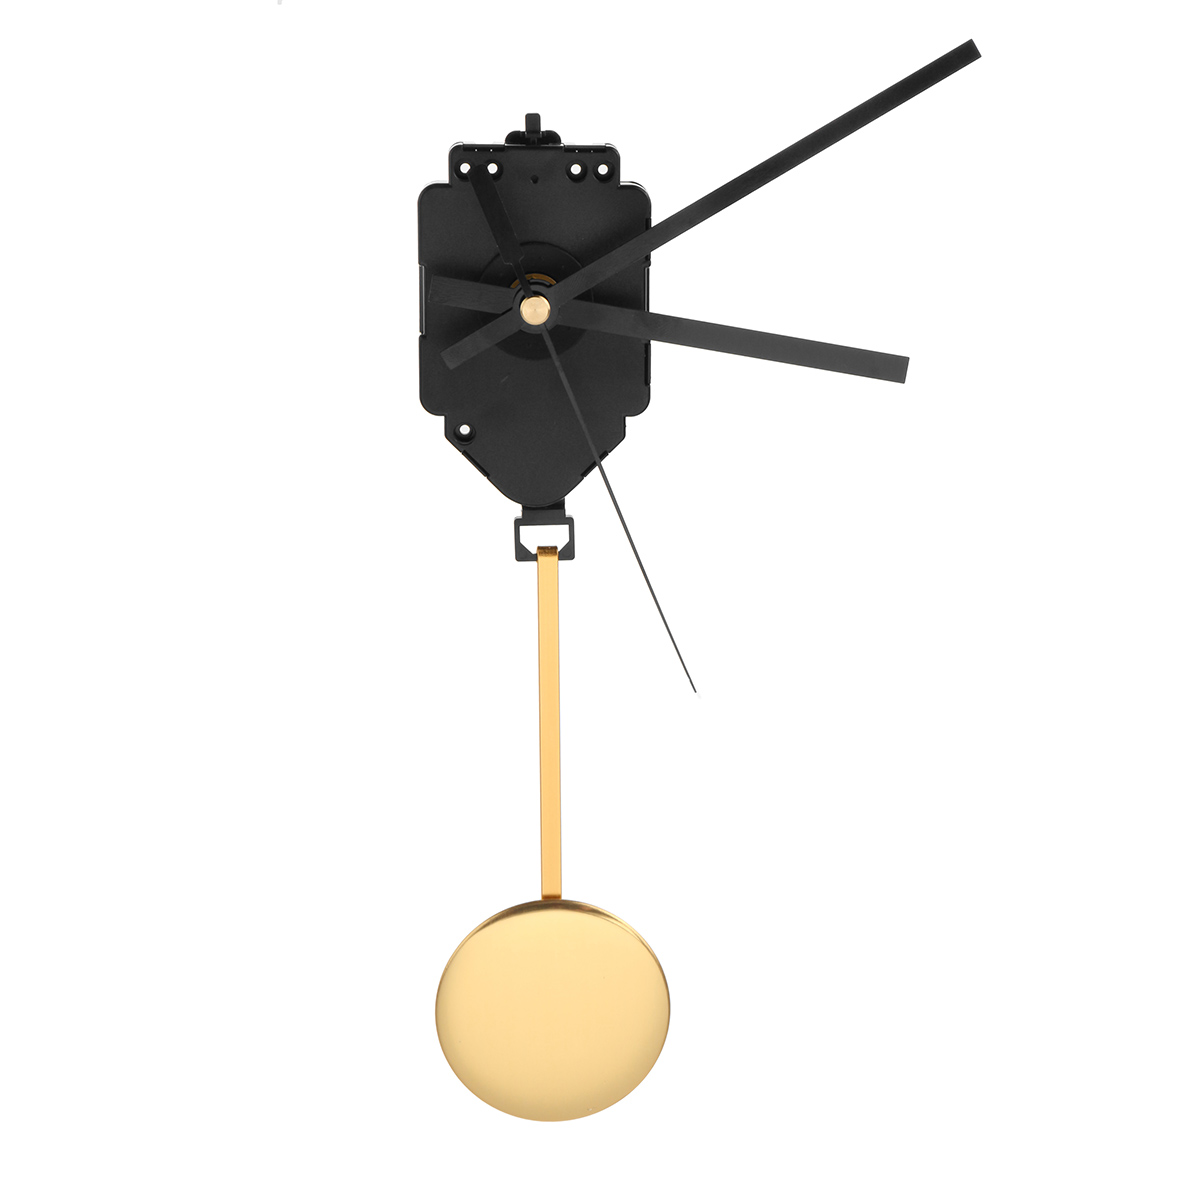 Wall-Quartz-Pendulum-Clock-Movement-Mechanism-Music-Box-DIY-Repair-Kit-for-Repairing-Replacing-Home--1906911-4